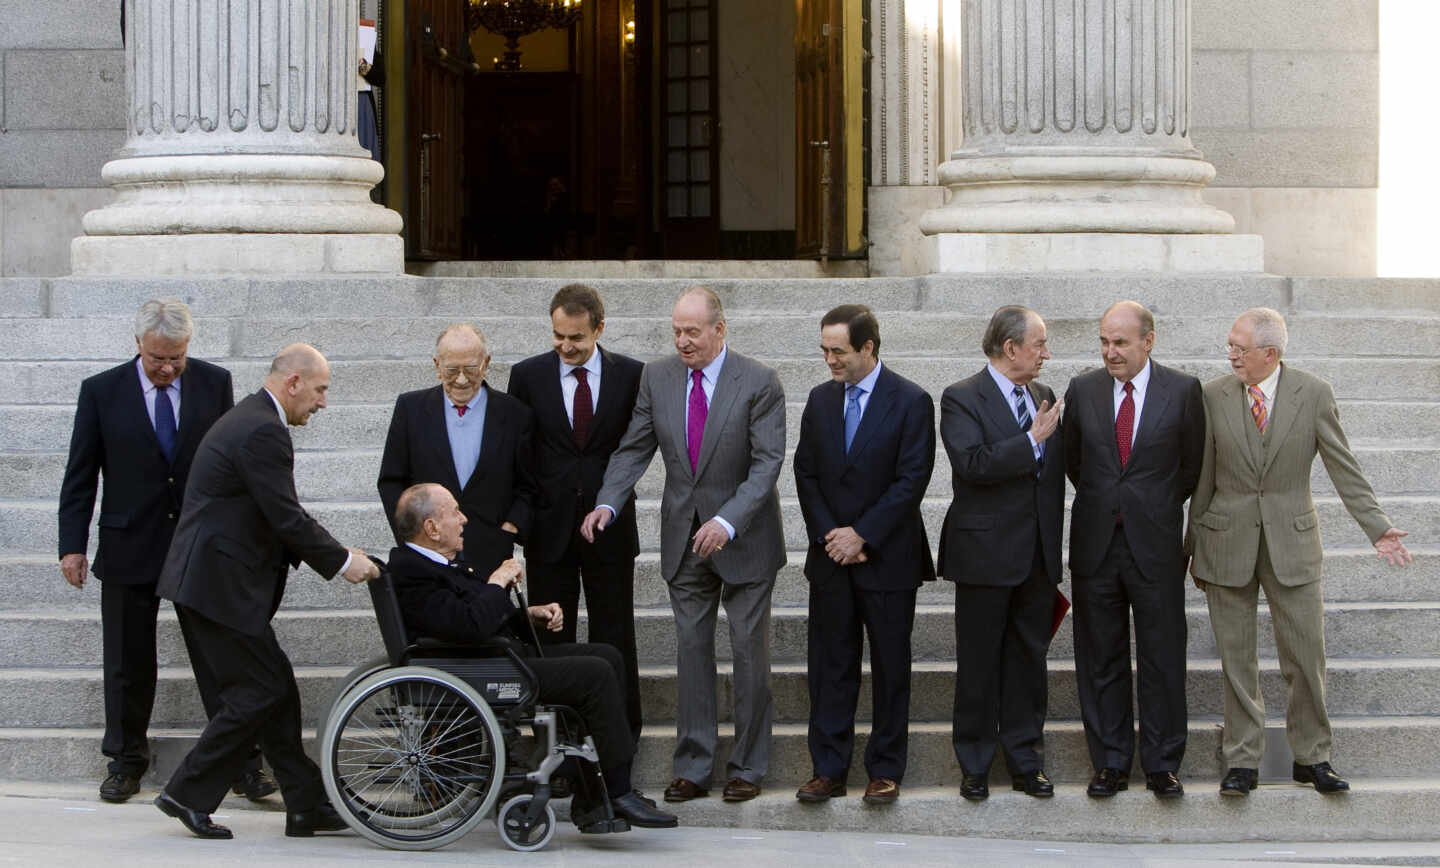 El rey Juan Carlos, Manuel Fraga, Santiago Carrillo, Landelino Lavilla y otros protagonistas del 23-F, en el 30 aniversario celebrado en el Congreso en 2011.